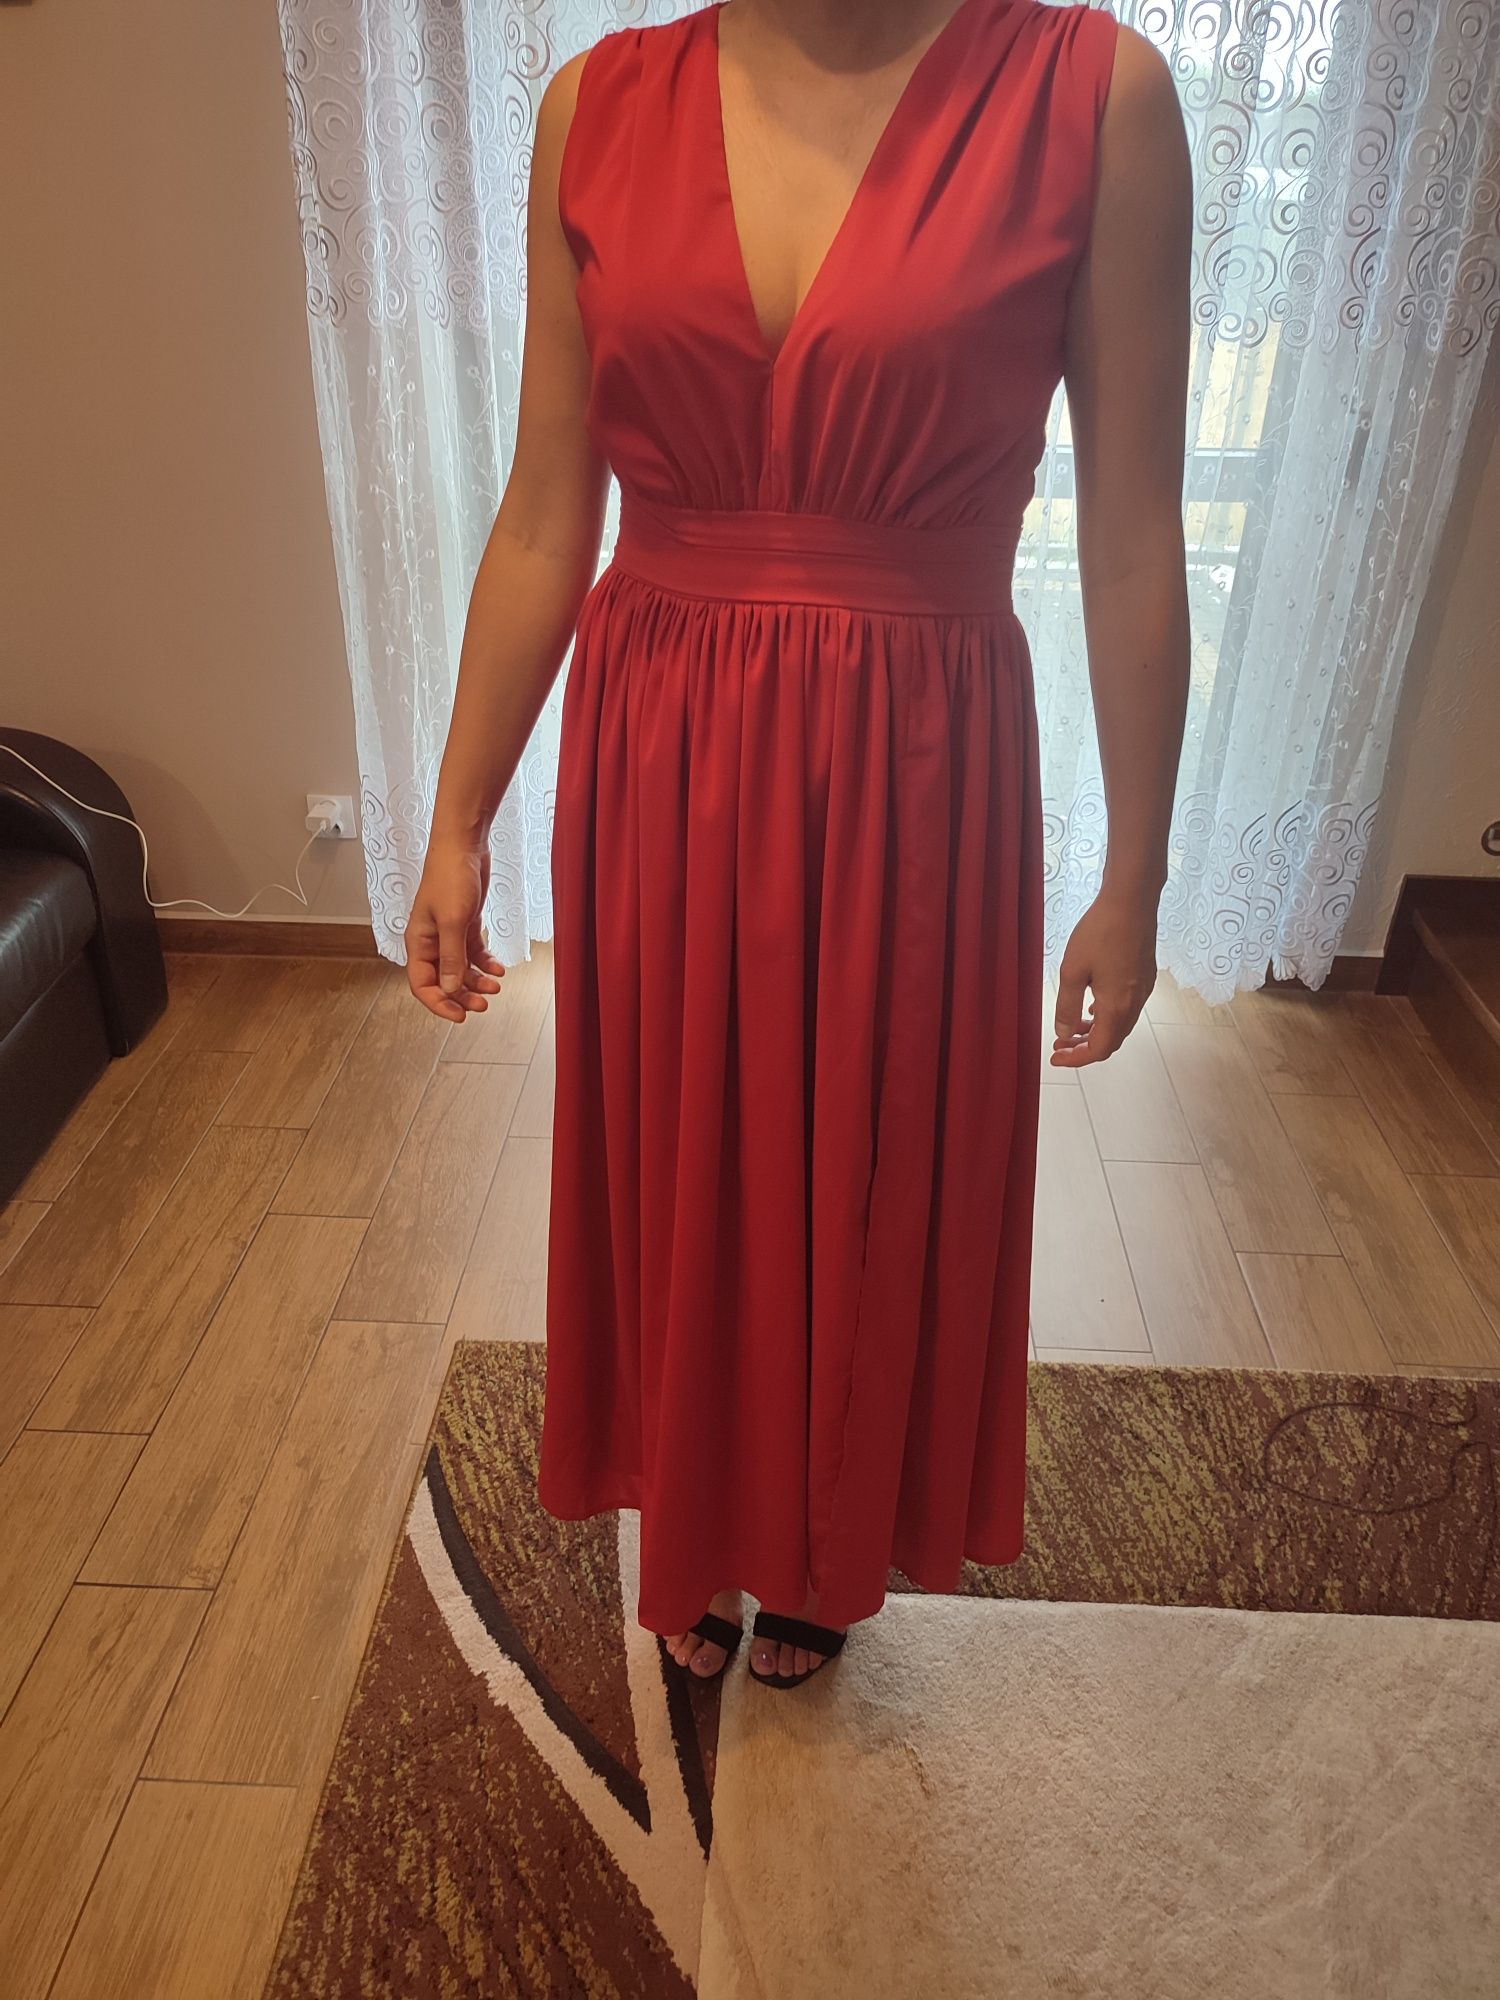 Sukienka, suknia czerwona